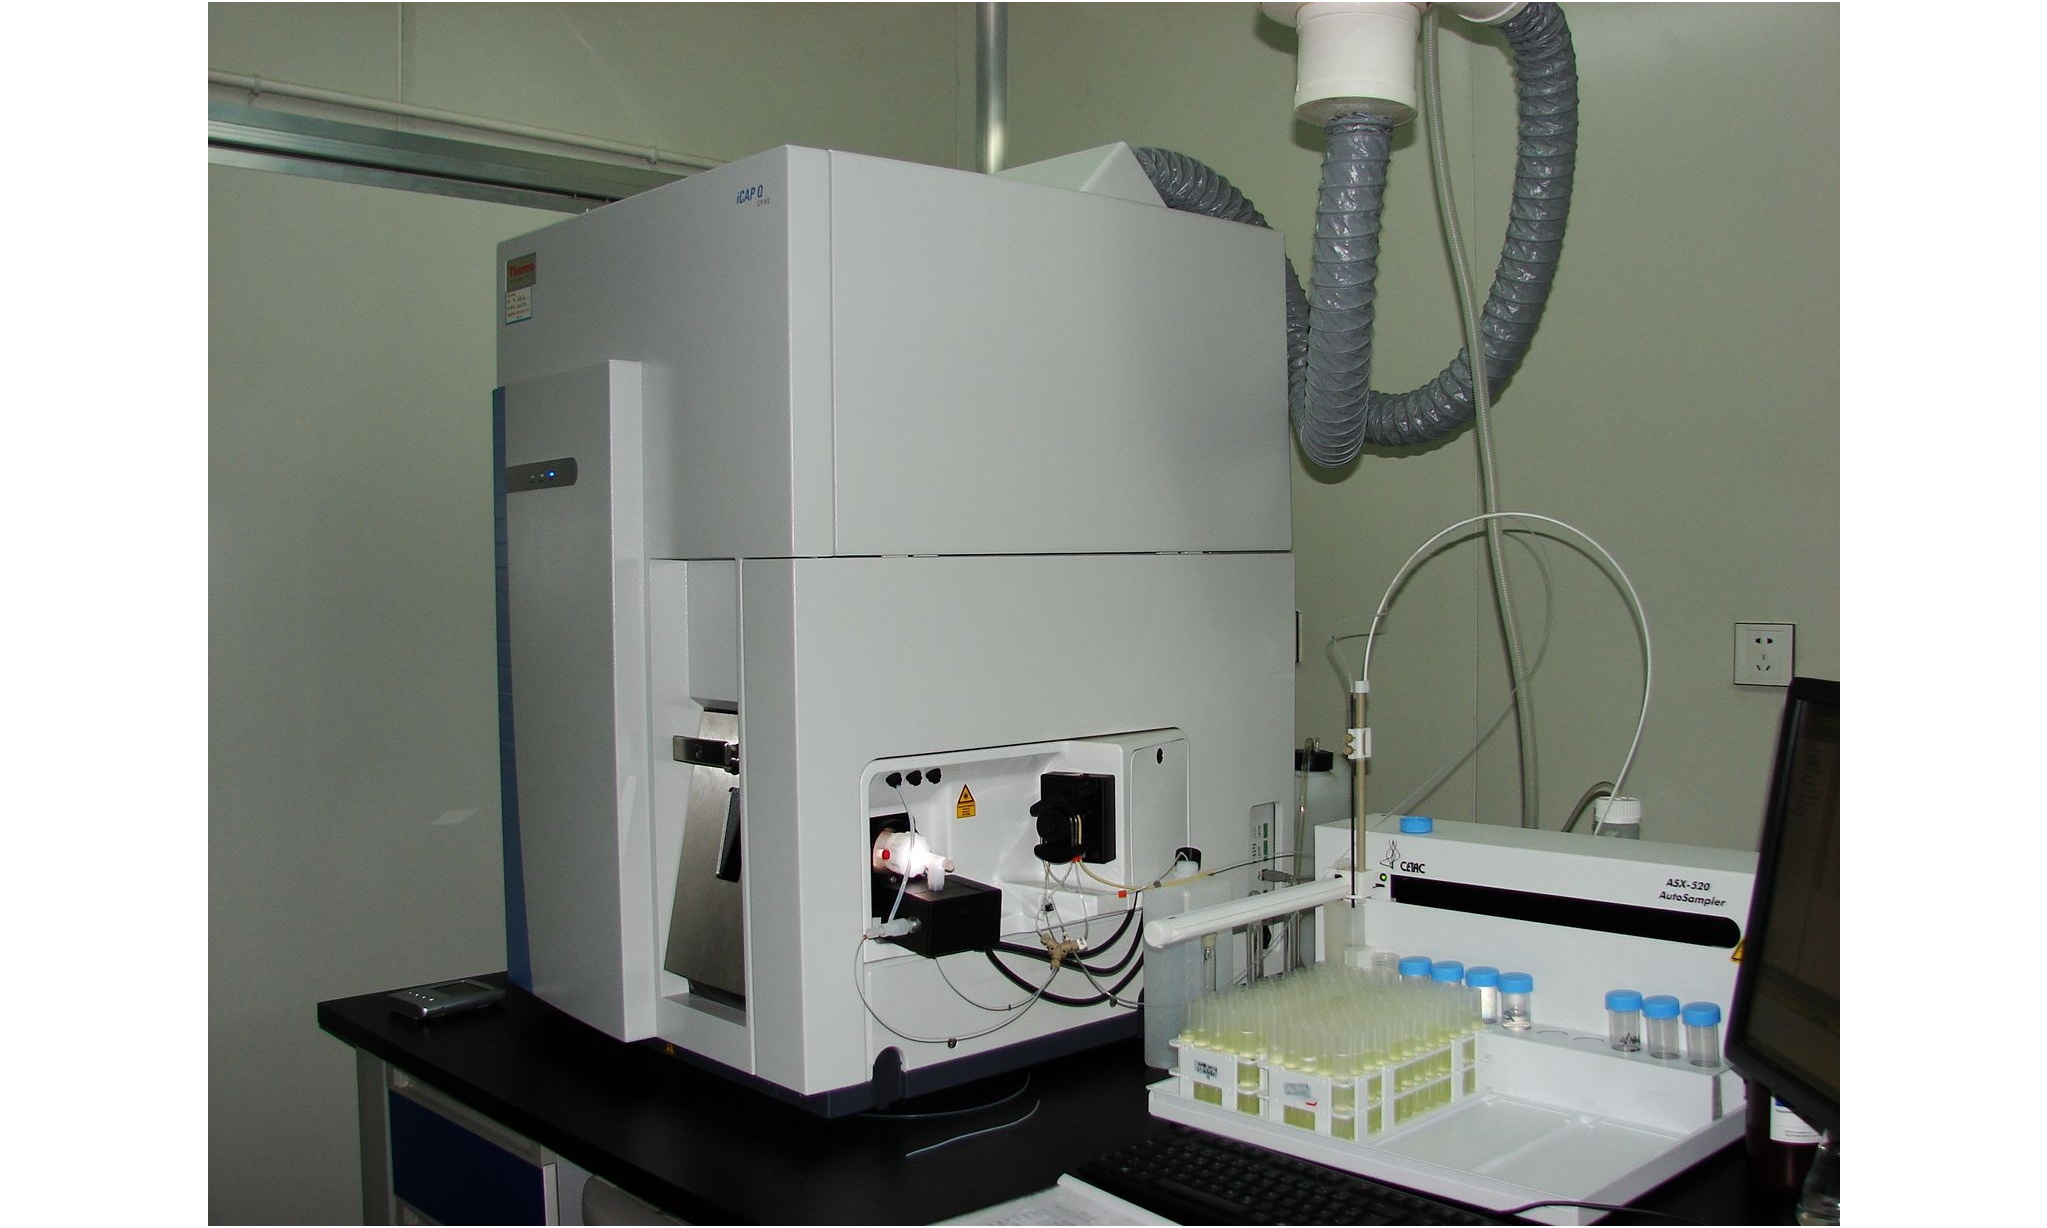 青海大学电感耦合等离子体质谱仪等仪器设备采购项目招标